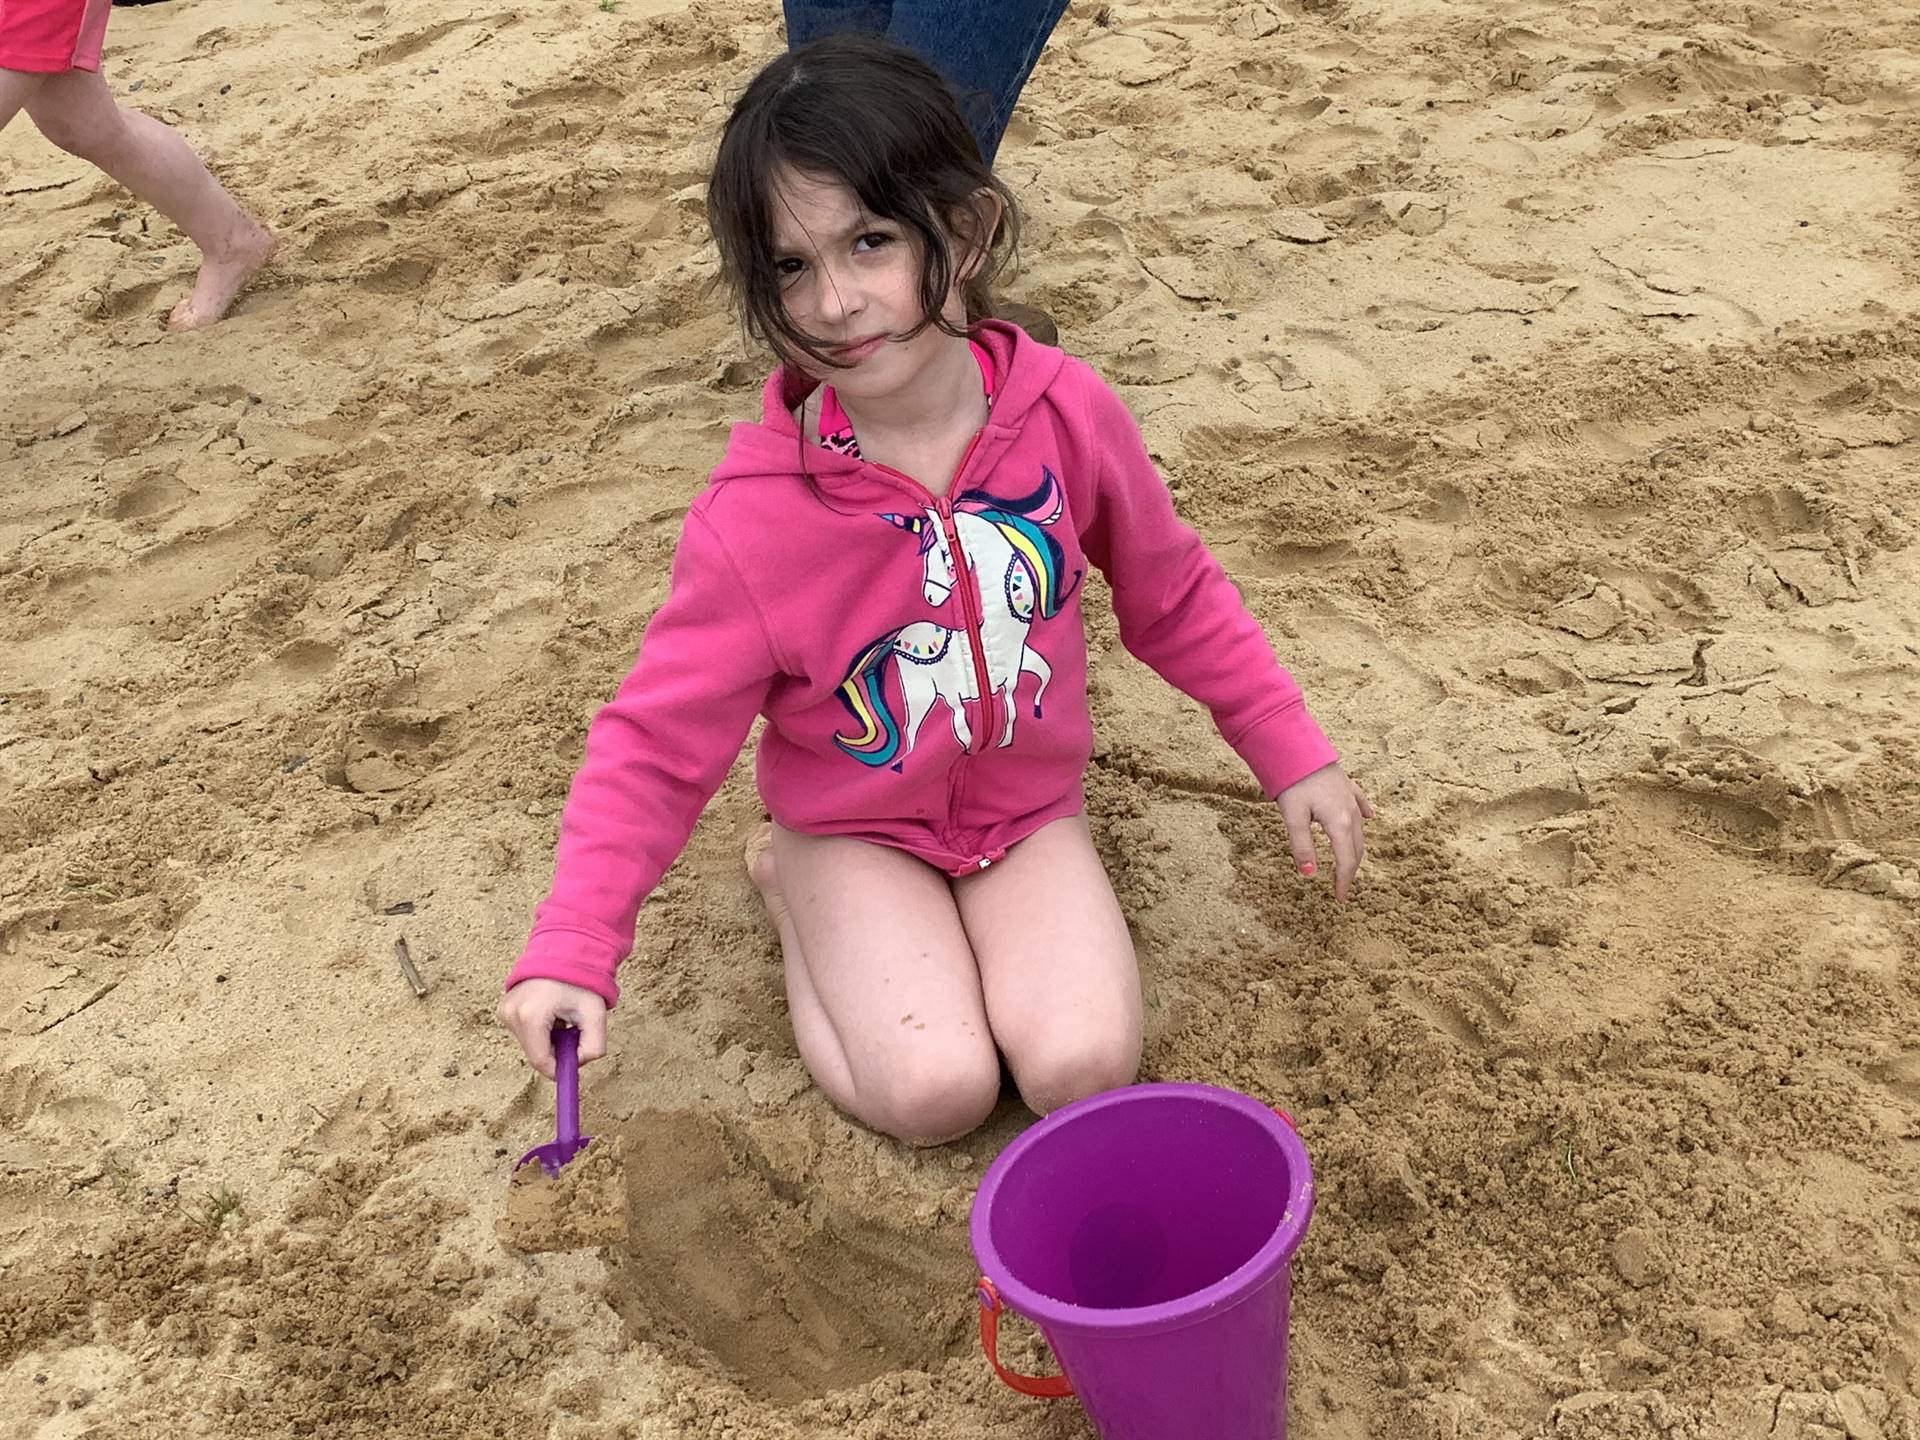 1 student builds a sand castle.